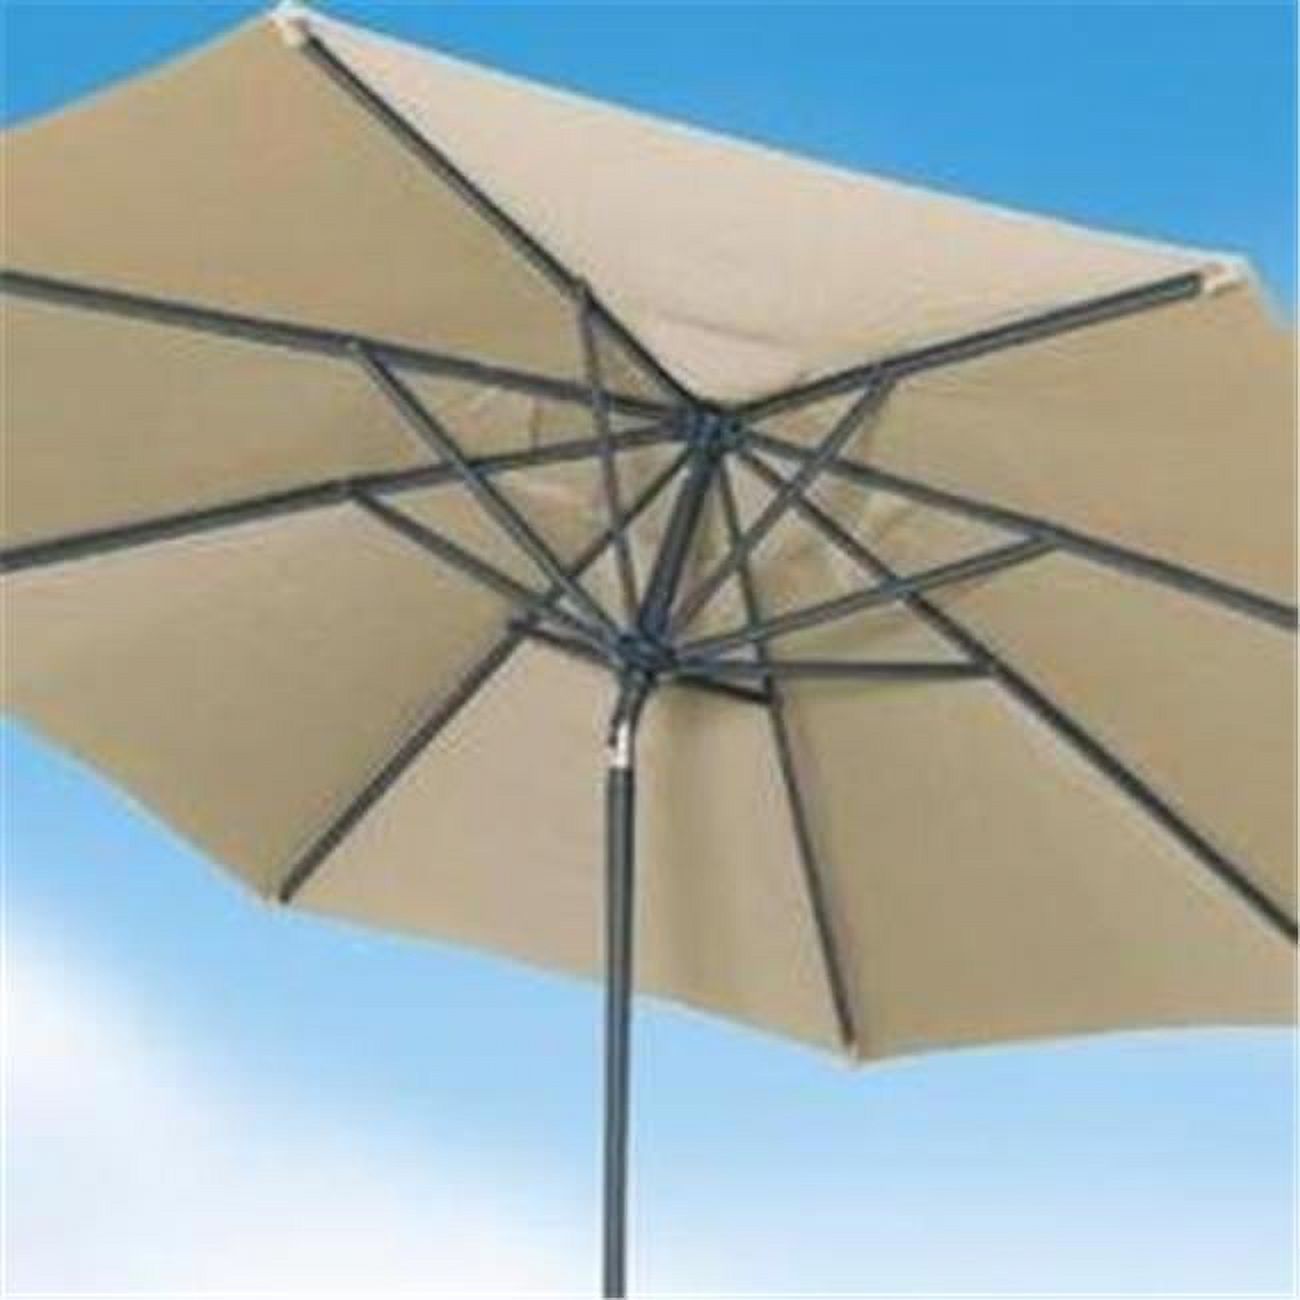 Shade Trends UM11-DU-5406 11 ft. x 8 Premium Market Umbrella&#44; Durango Frame&#44;Antique Beige Canopy - image 1 of 1